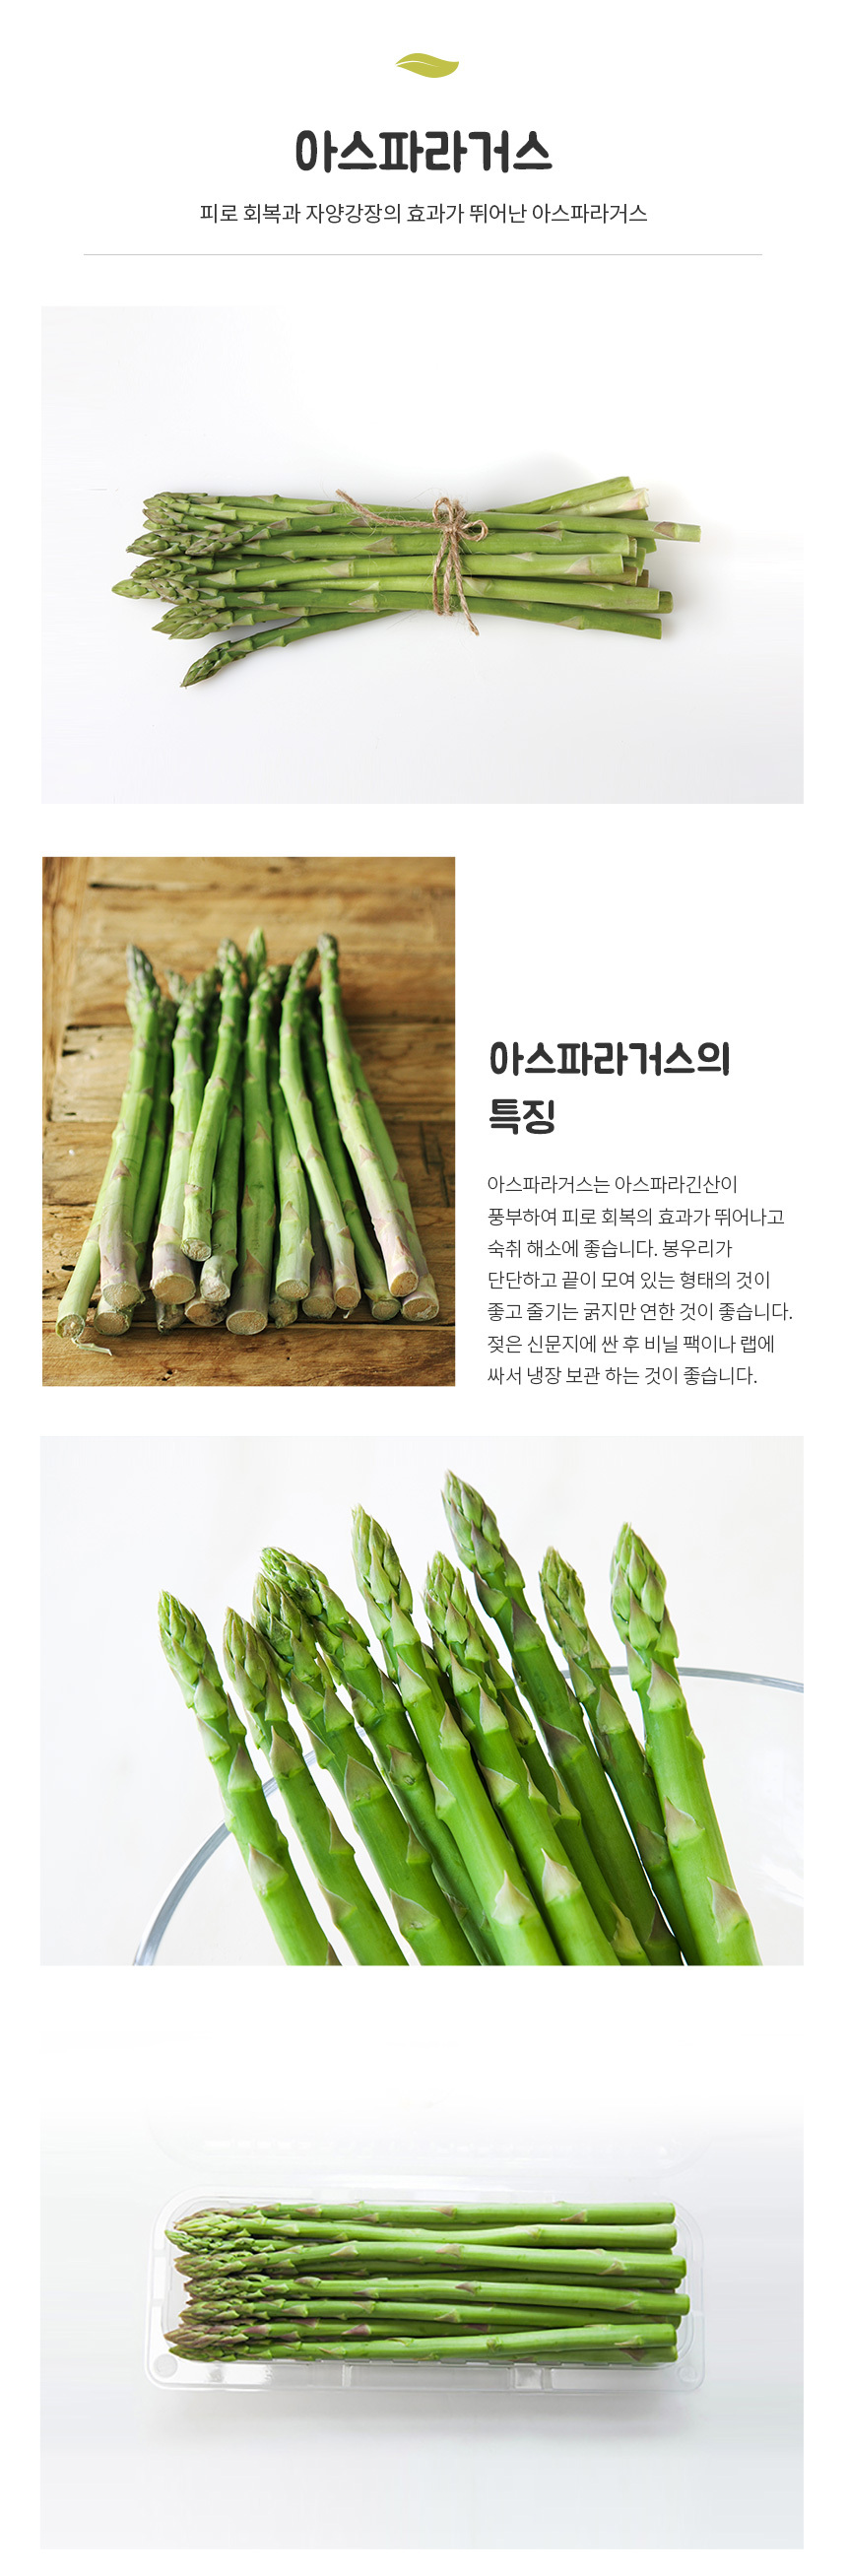 01_asparagus.jpg